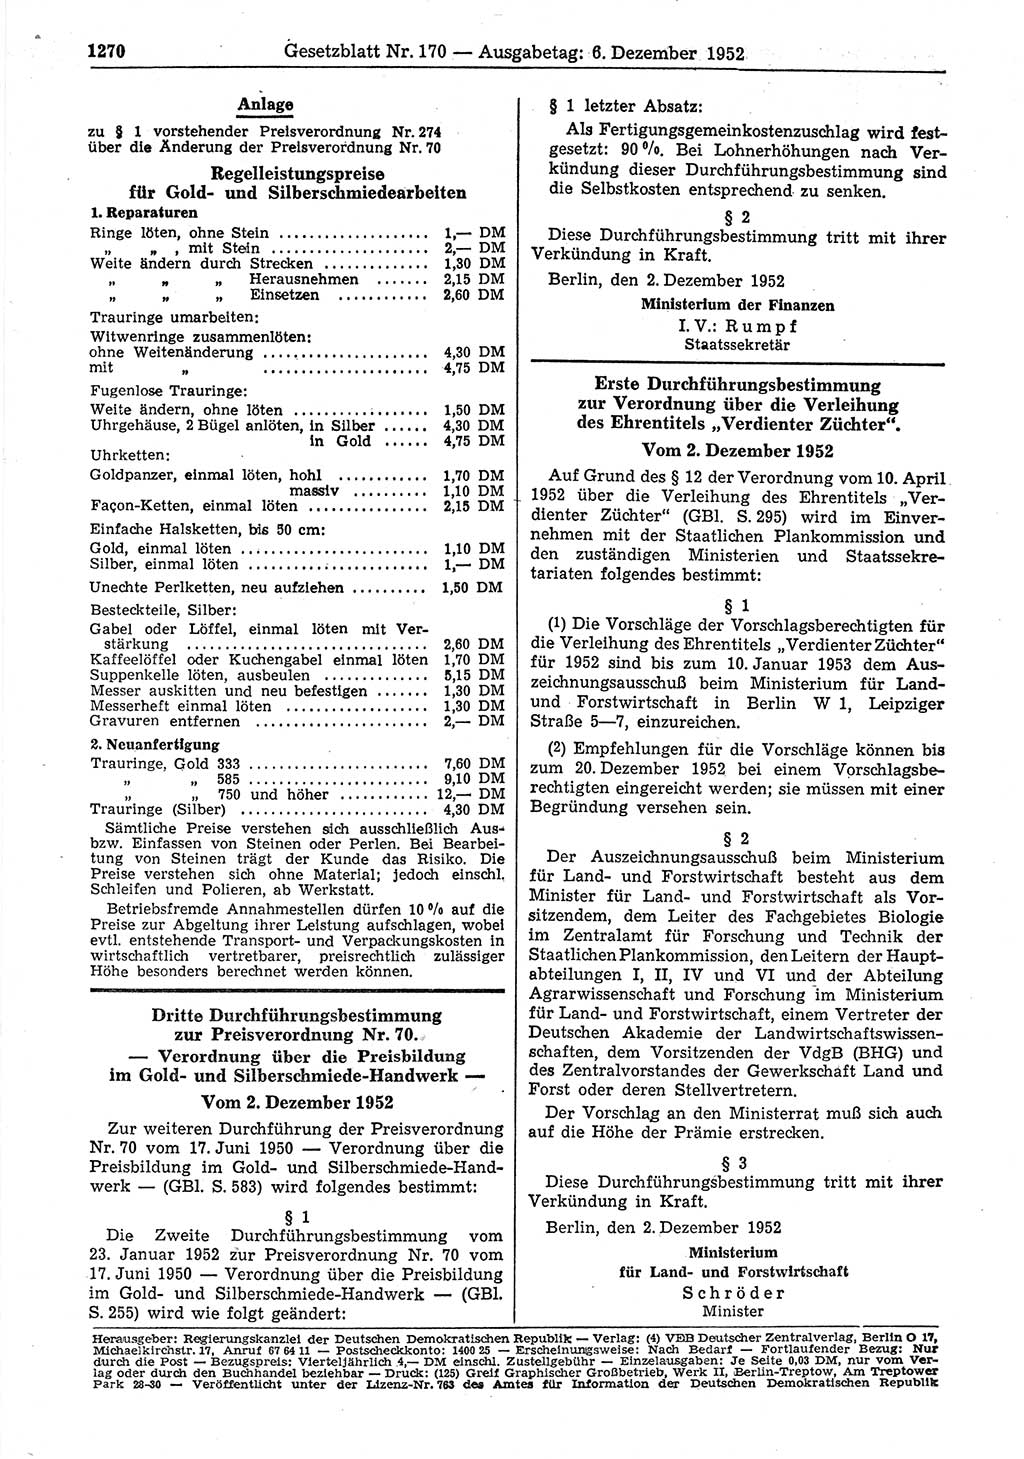 Gesetzblatt (GBl.) der Deutschen Demokratischen Republik (DDR) 1952, Seite 1270 (GBl. DDR 1952, S. 1270)